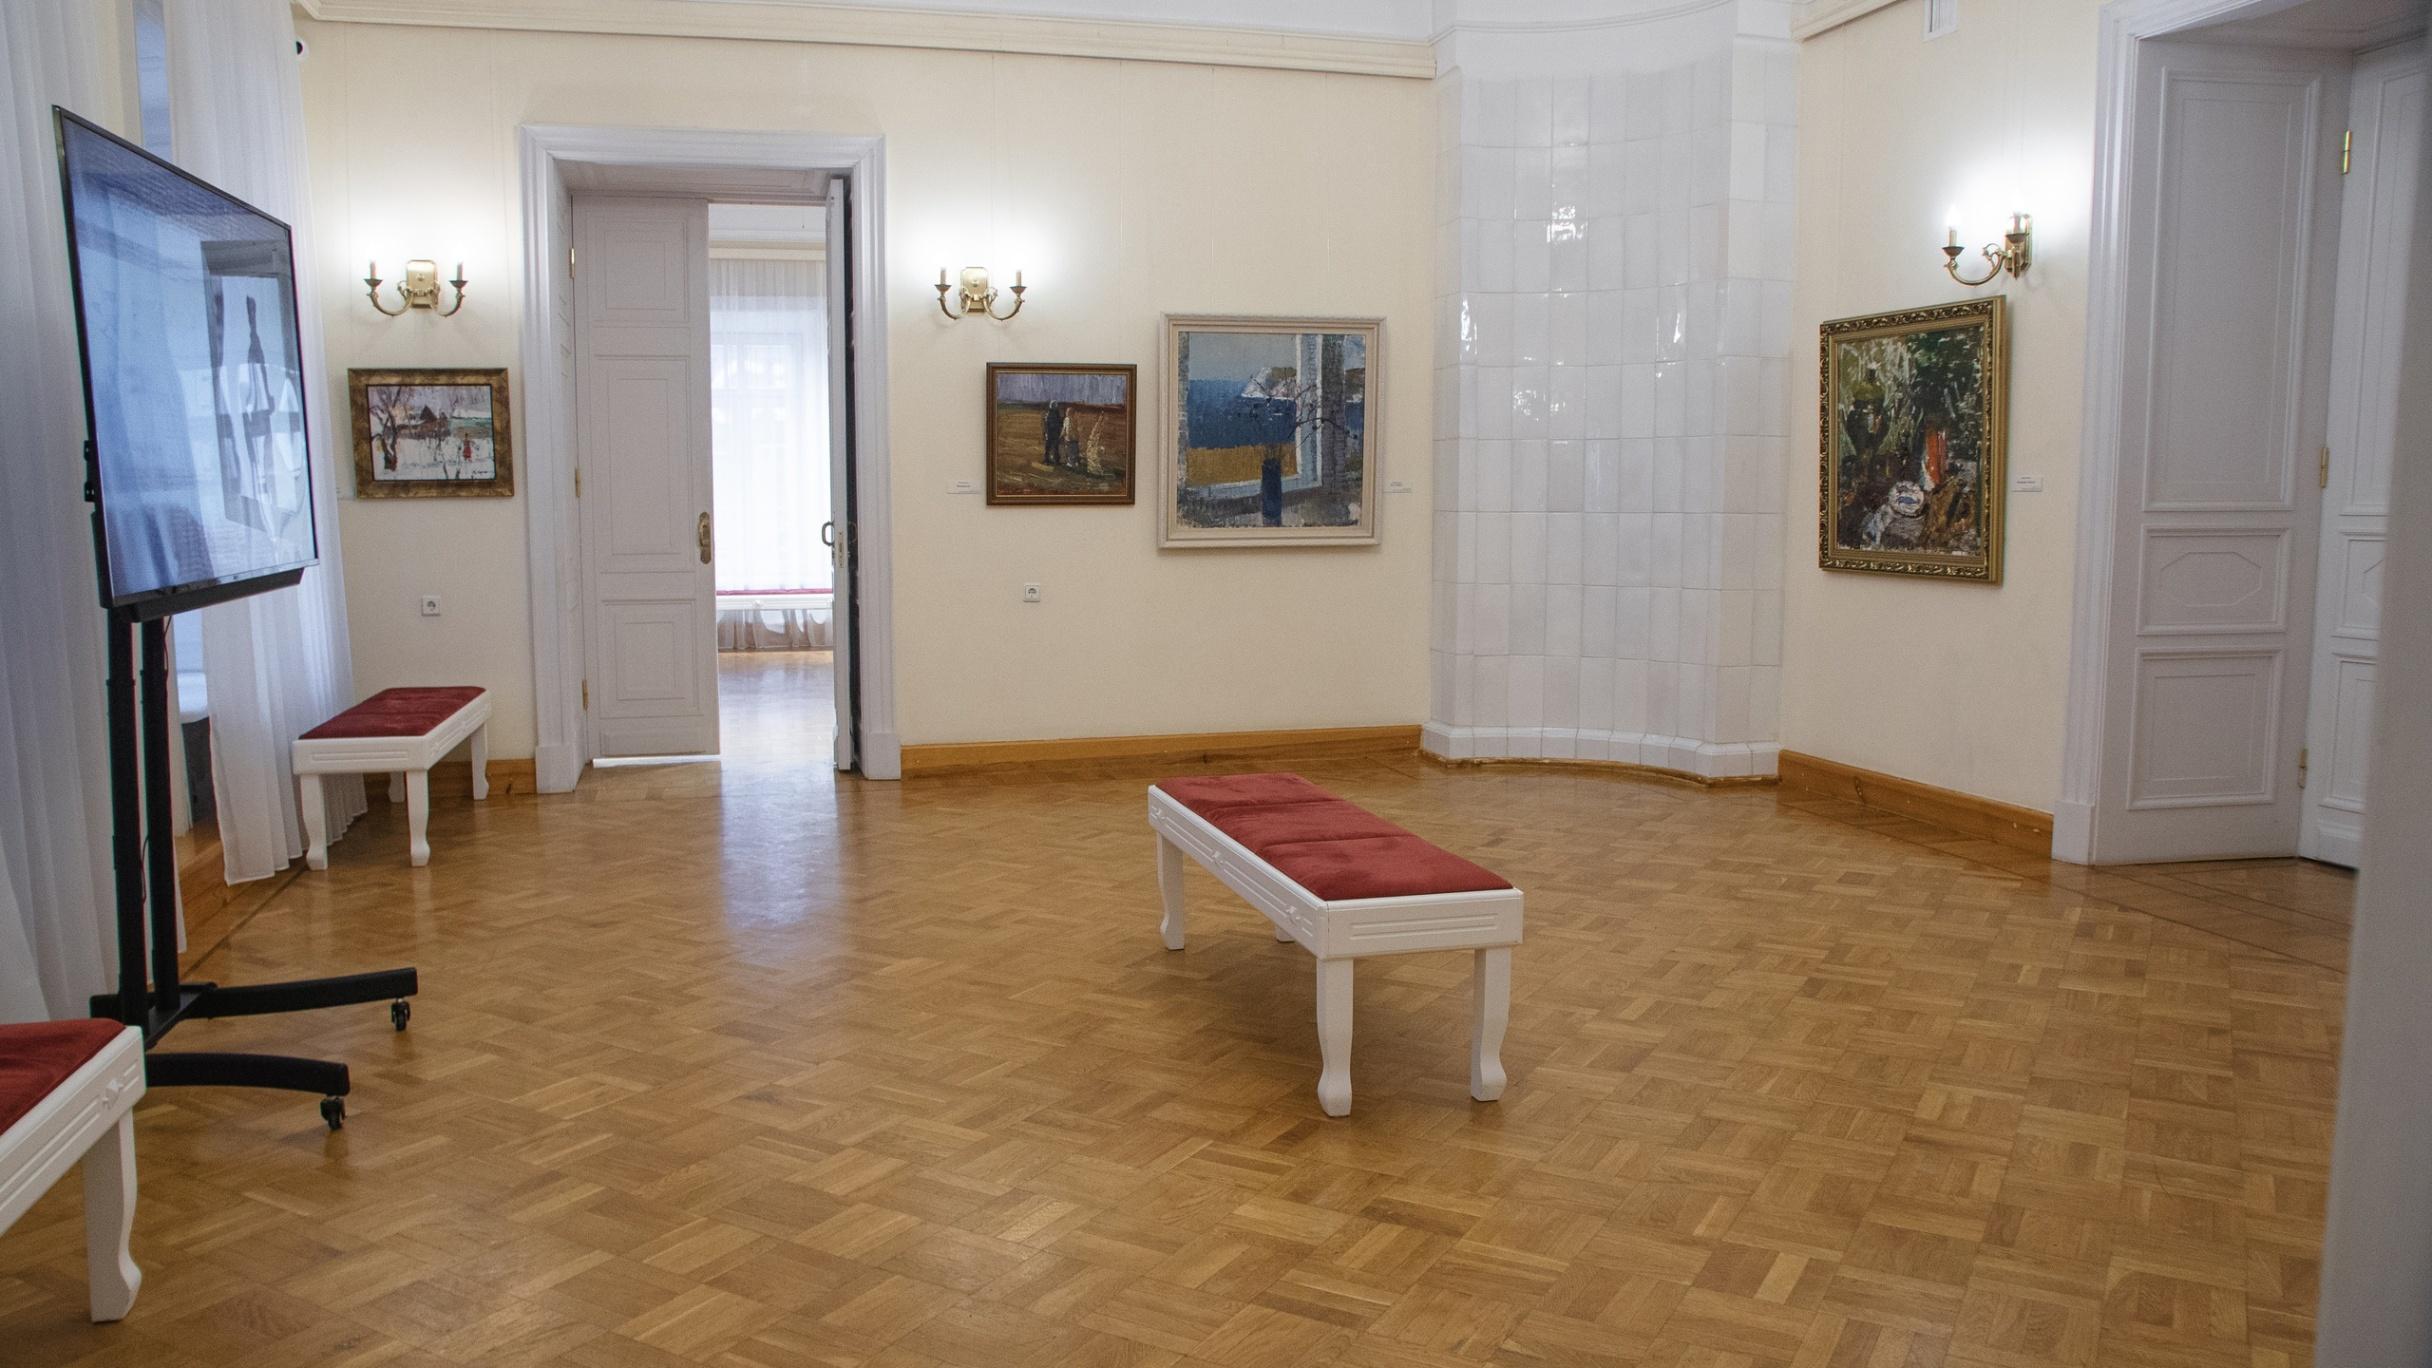 Липецкий музейно-выставочный центр, афиша на 29 июня – афиша